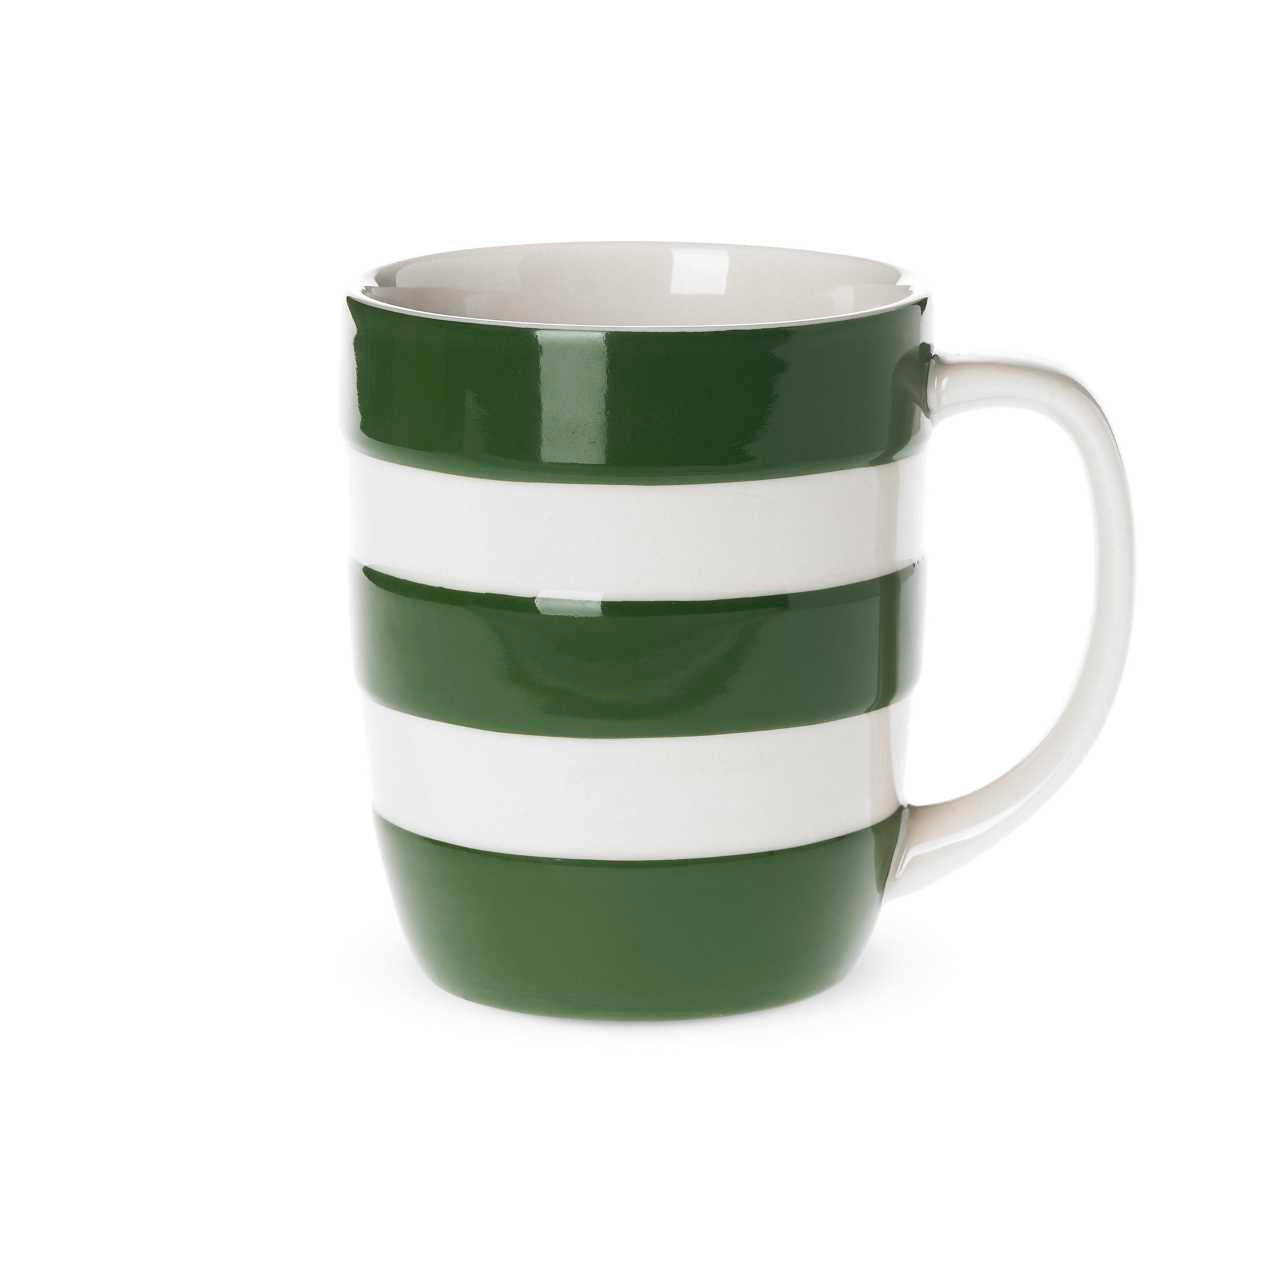 Cornishware Pottery Mug in green stripes